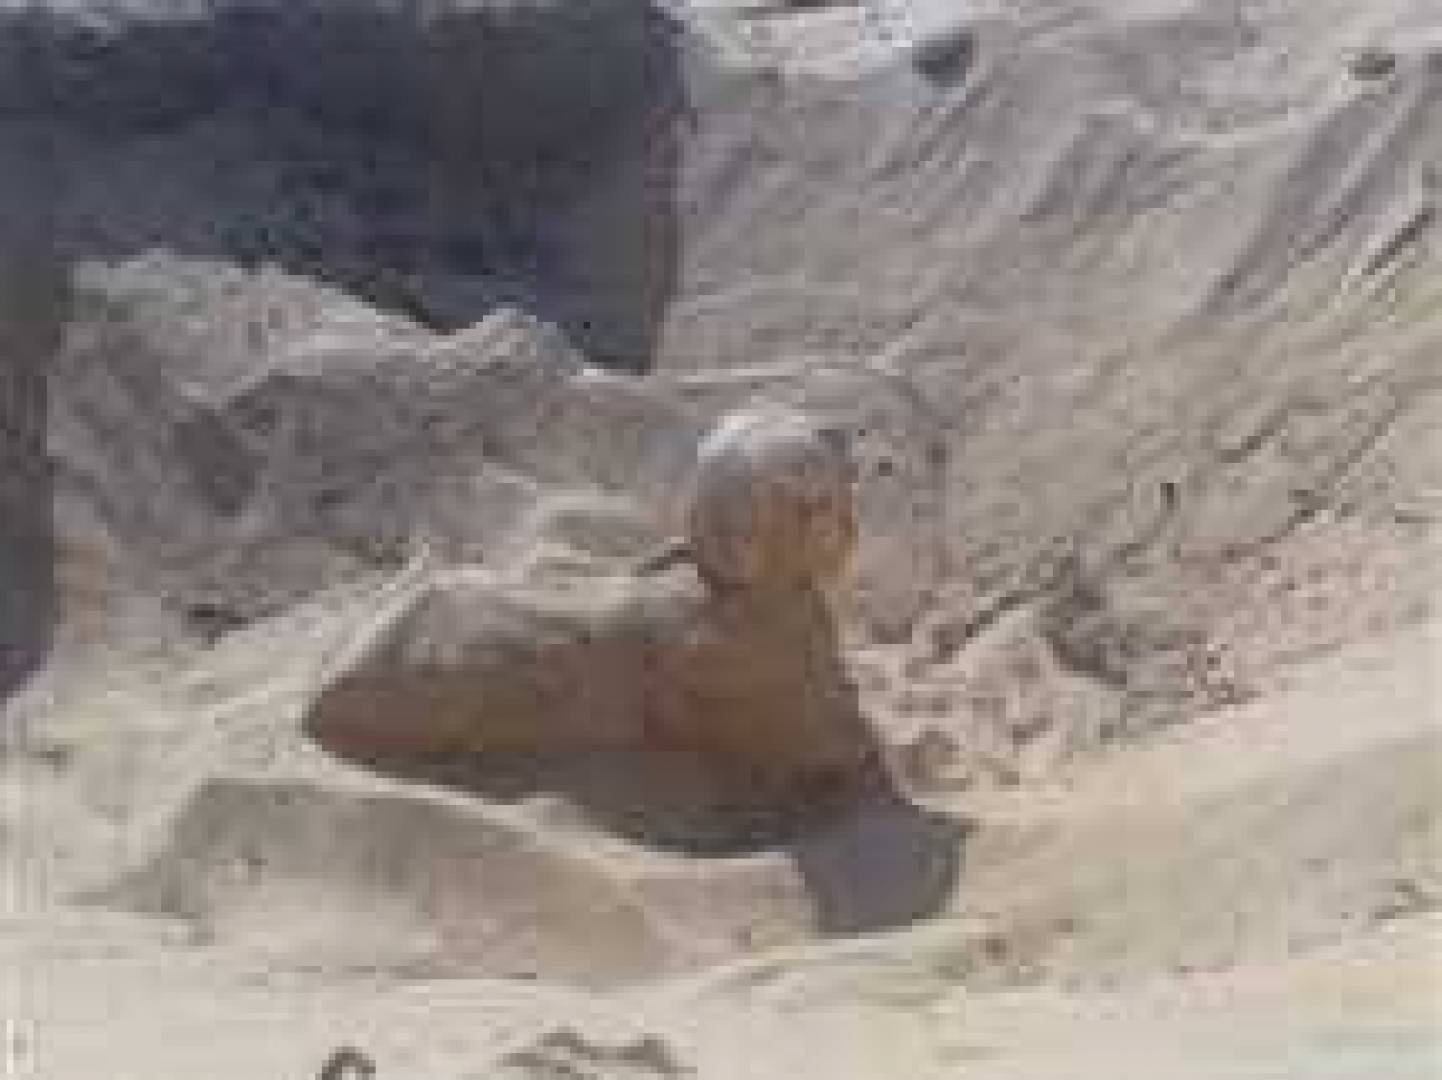 اكتشاف تمثال أثري ملكي قديم يشبه أبو الهول في مصر